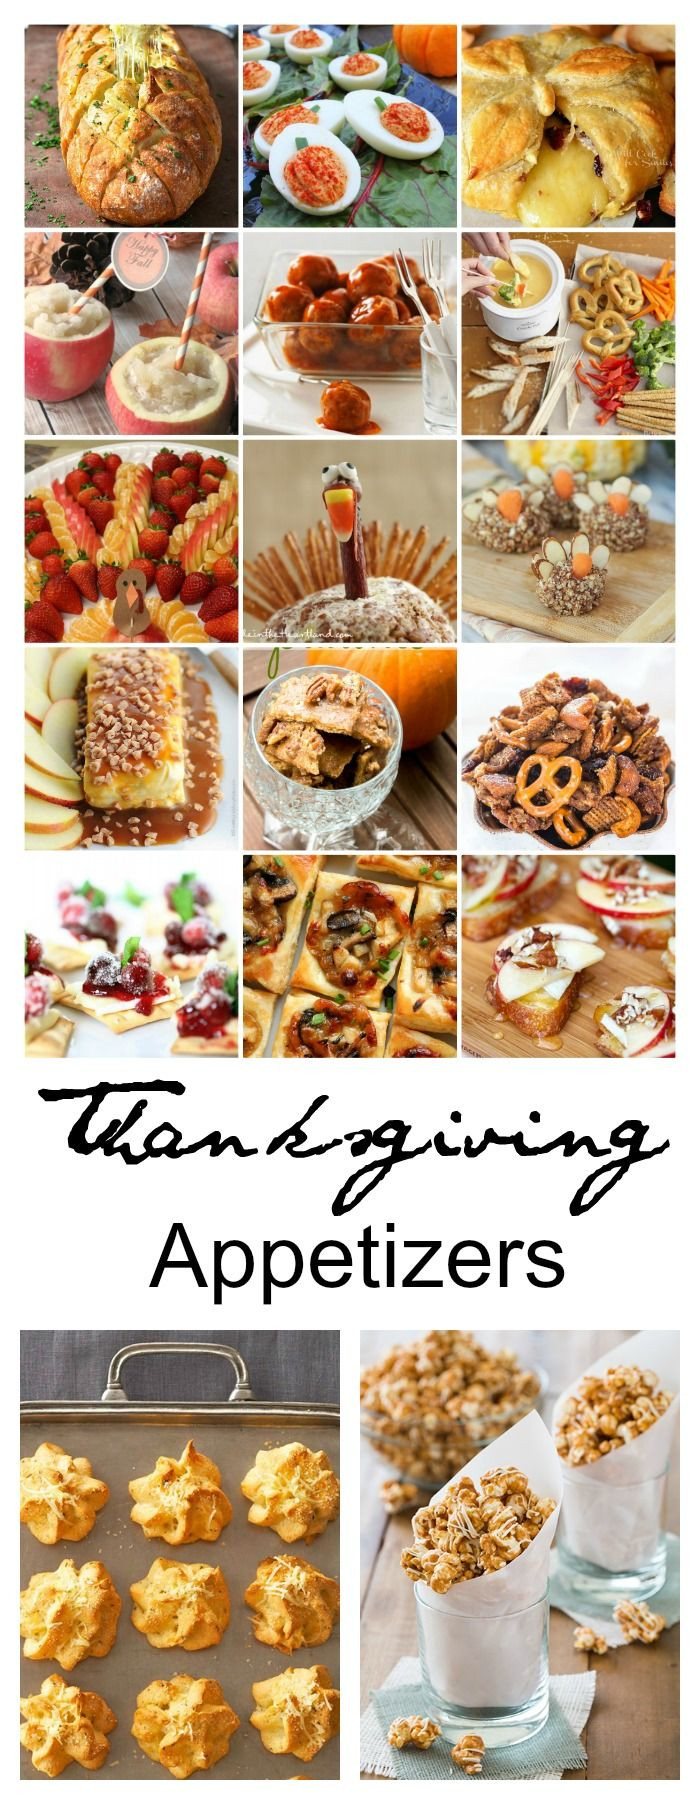 Appetizers For Thanksgiving Dinner Easy
 25 best ideas about Thanksgiving appetizers on Pinterest